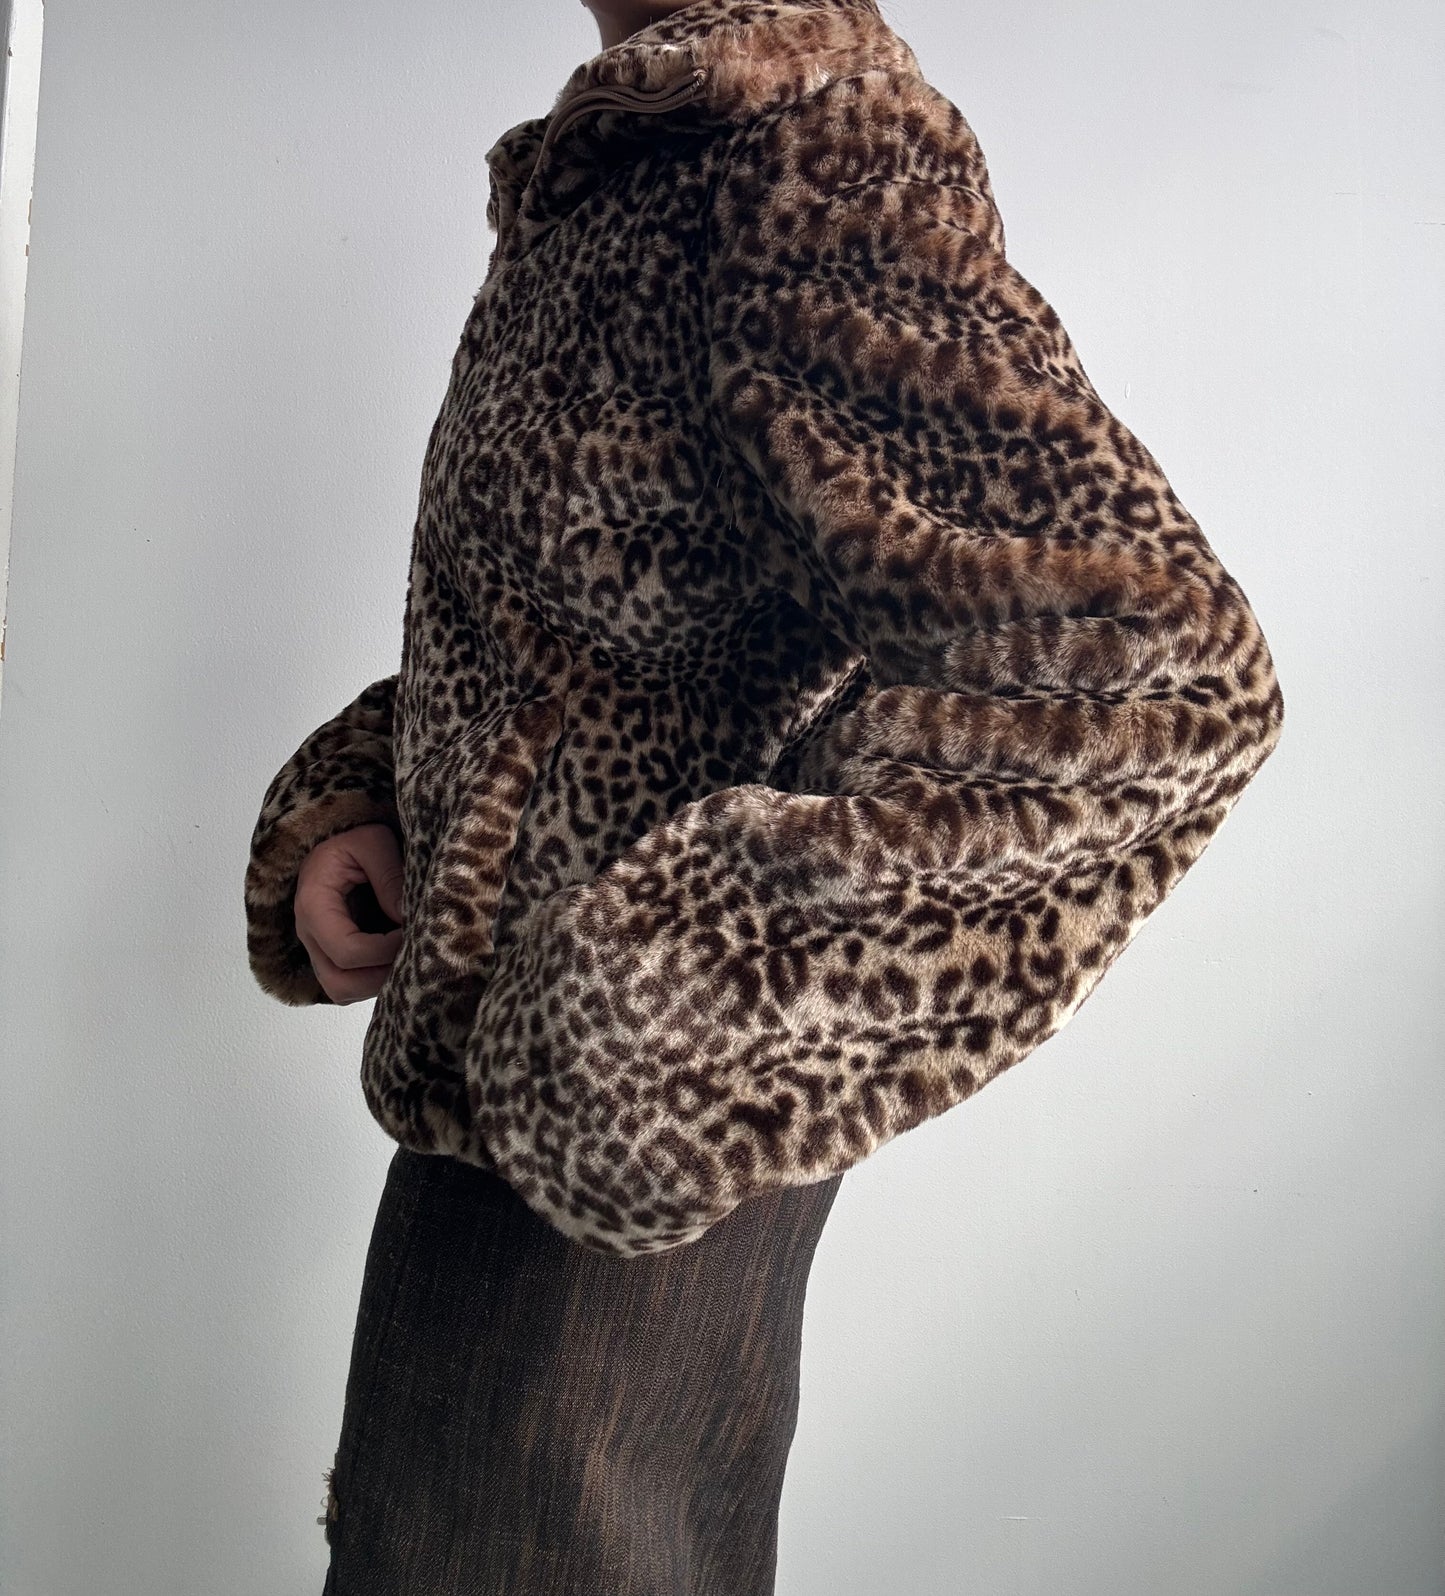 Faux Fur Leopard Print Zip Jacket M